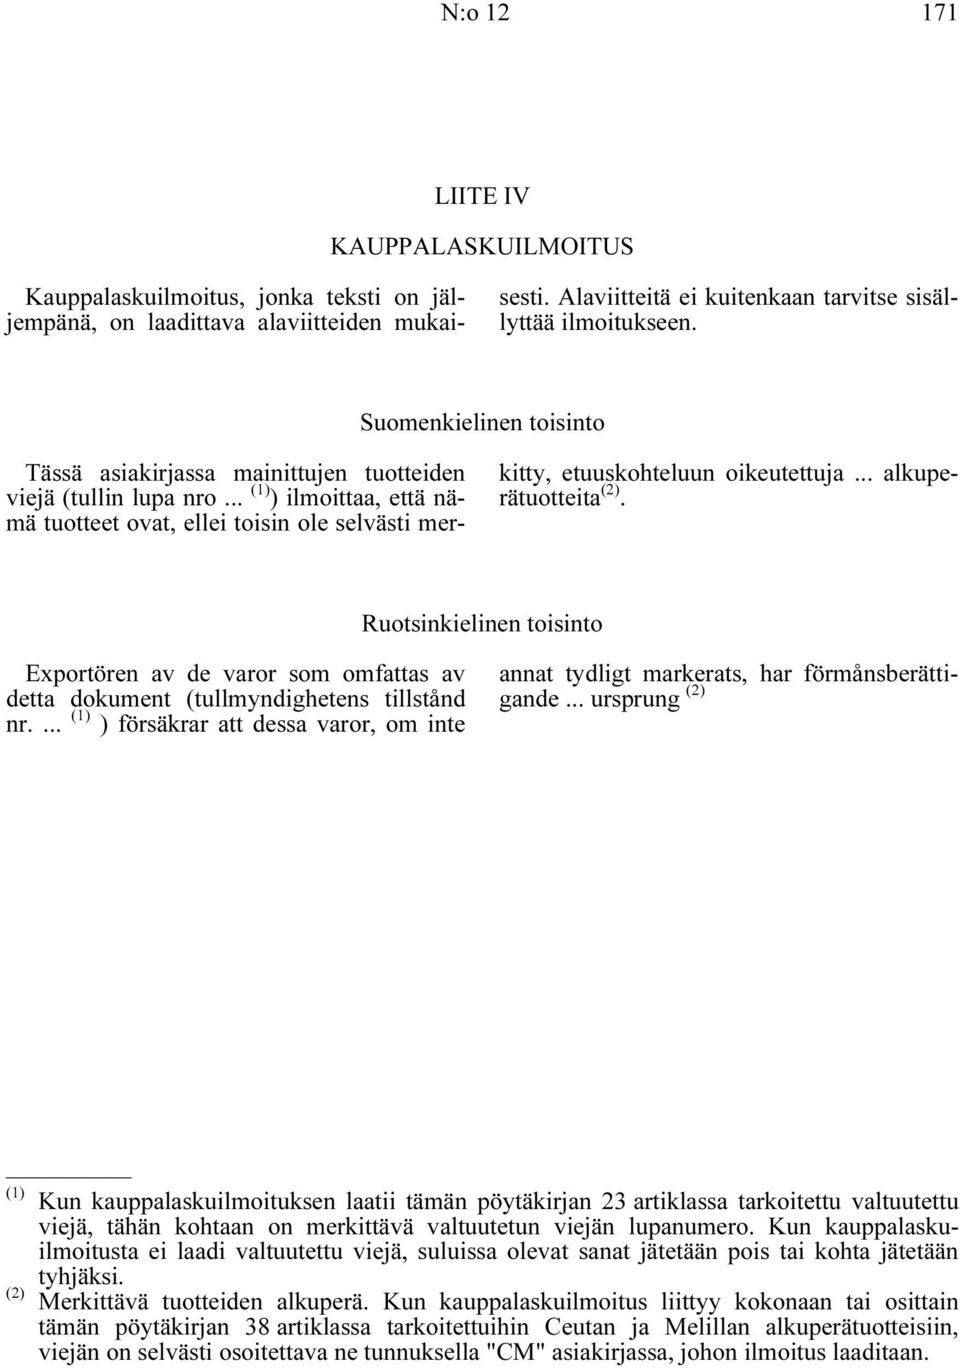 .. alkuperätuotteita (2). Ruotsinkielinen toisinto Exportören av de varor som omfattas av detta dokument (tullmyndighetens tillstånd nr.